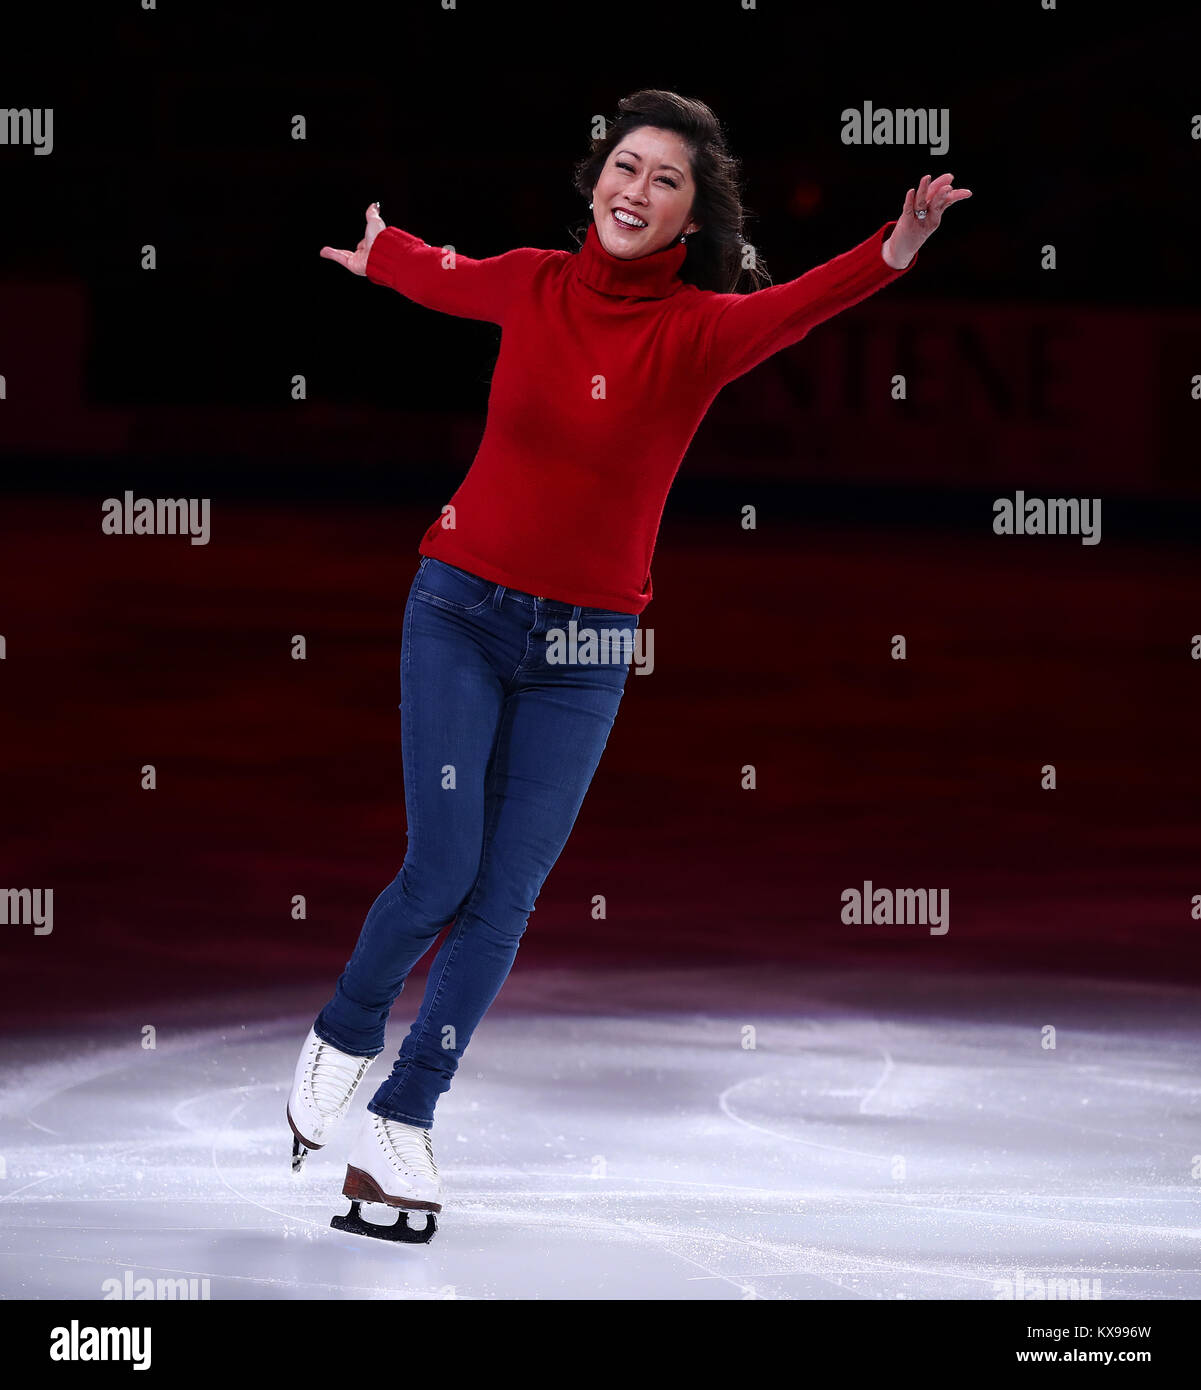 Olympische Goldmedaille skater Kristi Yamaguchi Schlittschuhe in San Jose, Kalifornien. Stockfoto